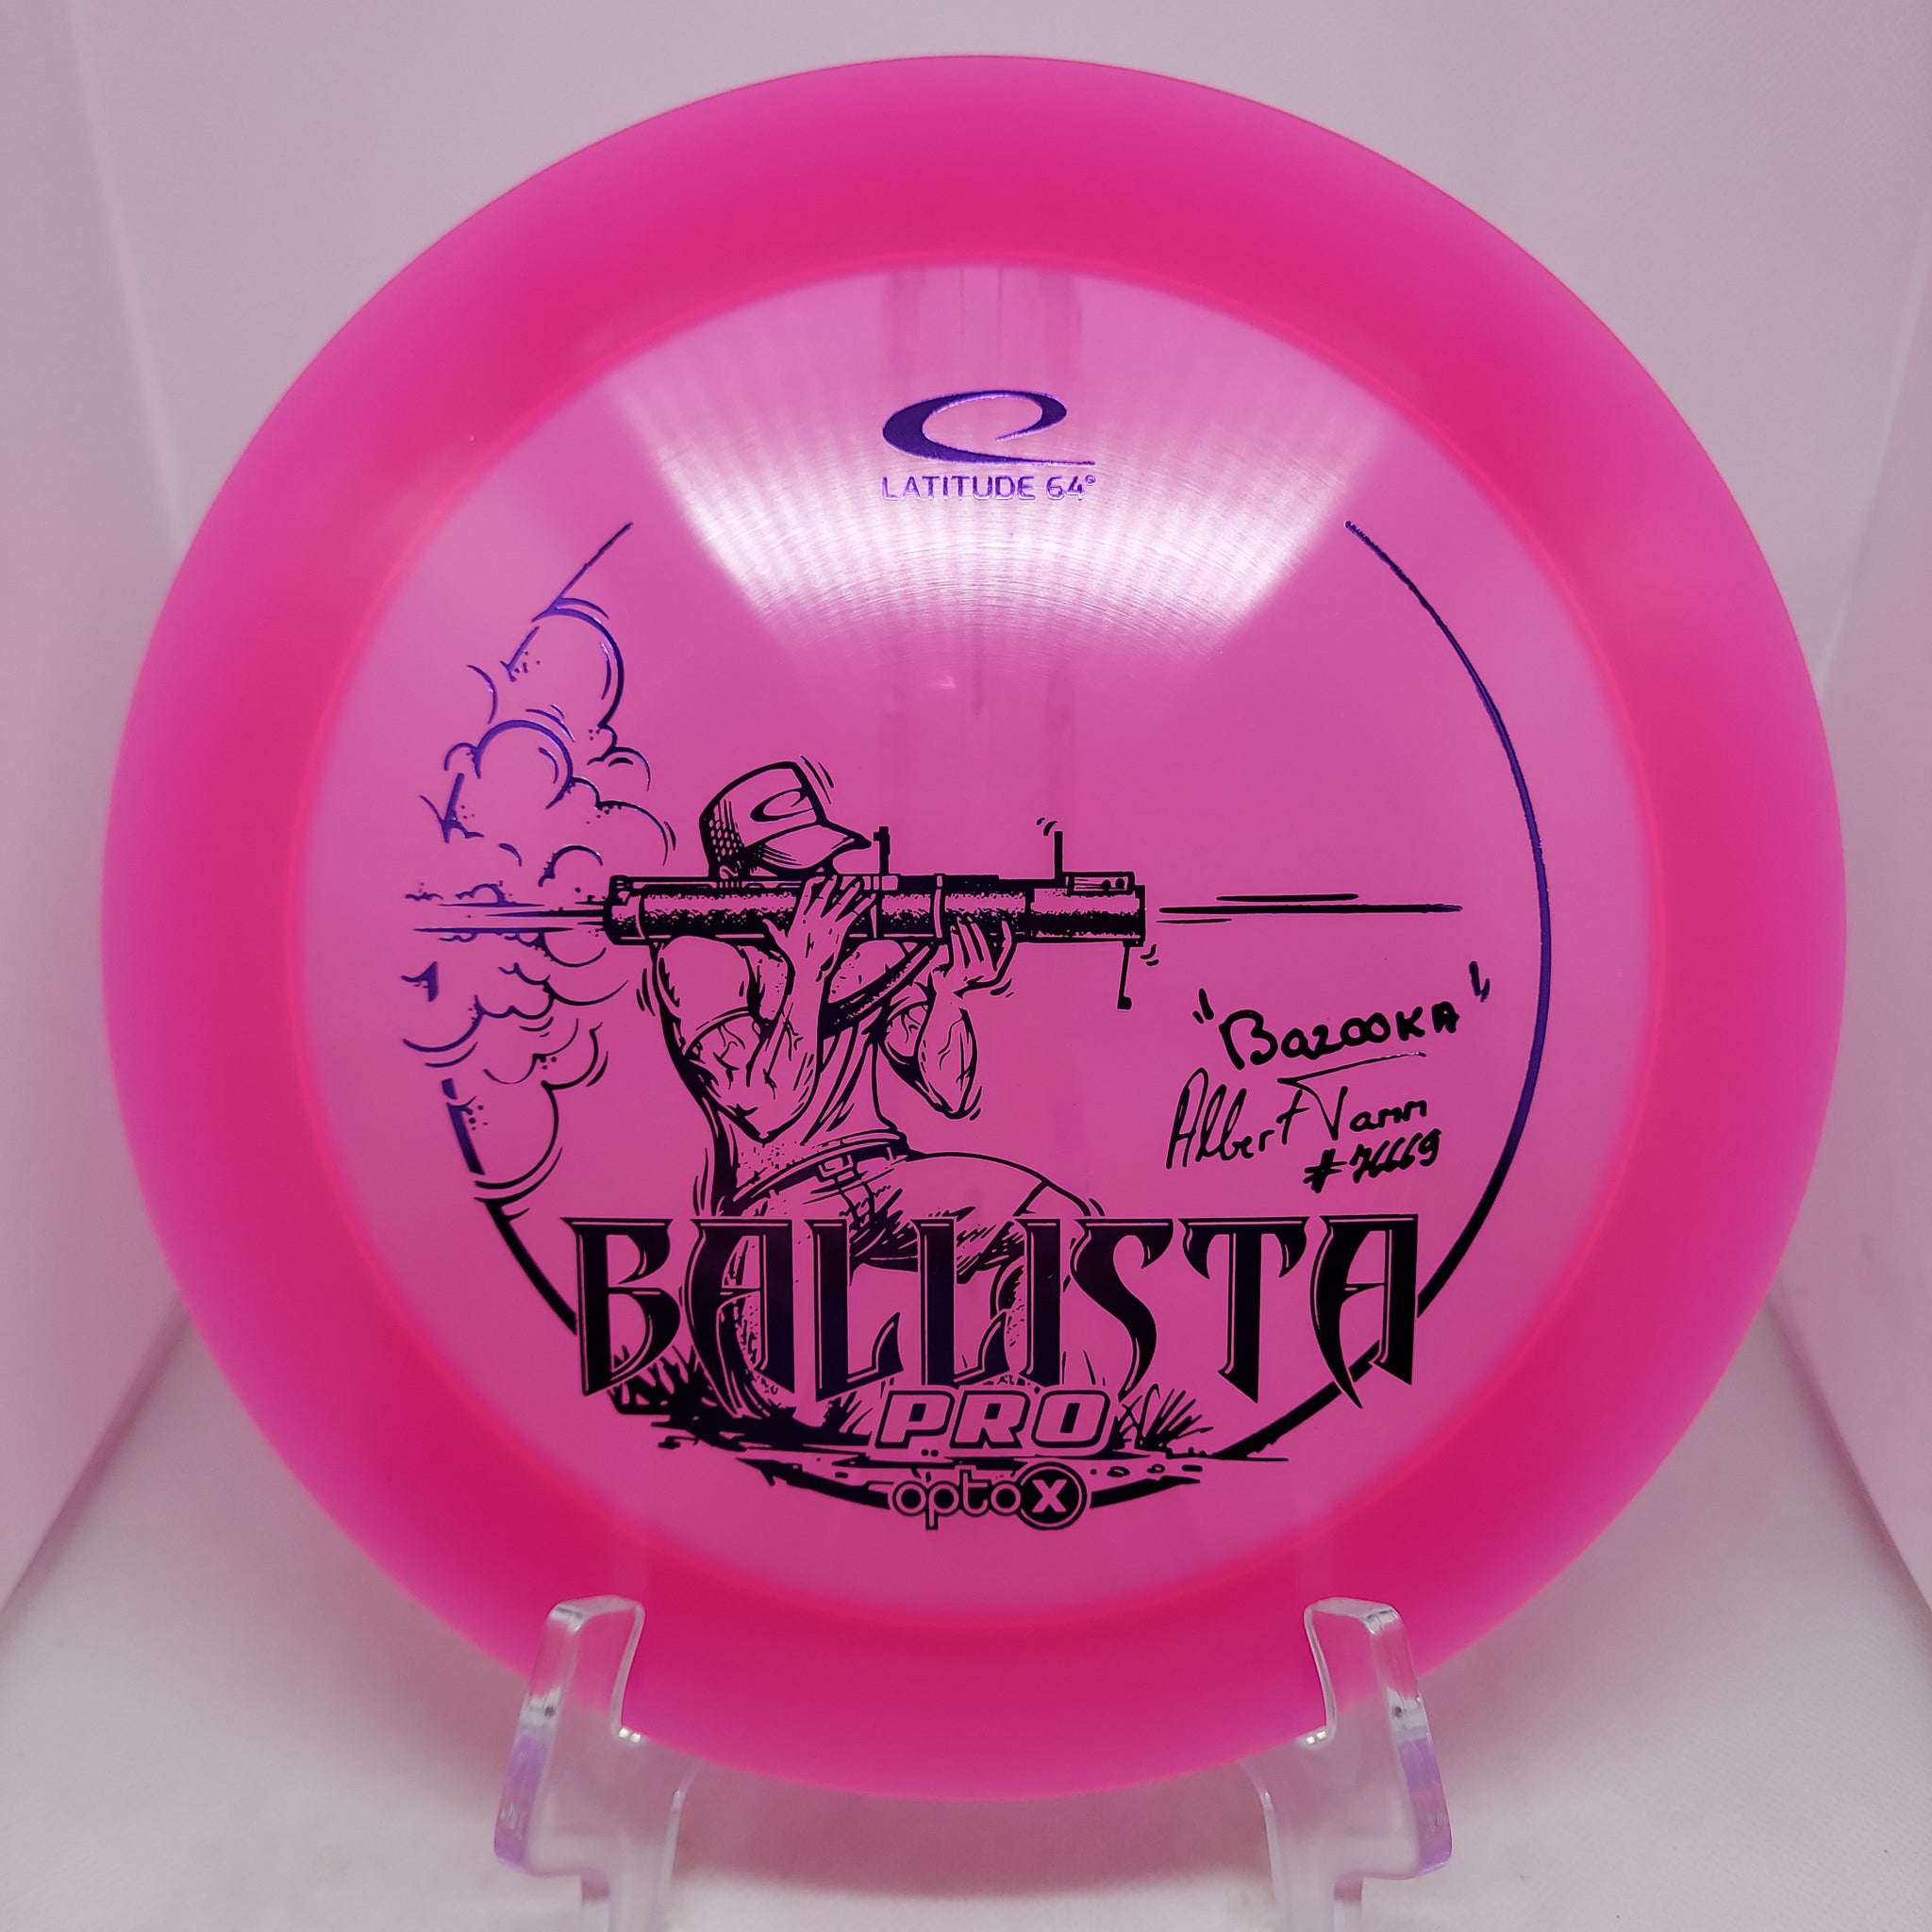 Ballista Pro (Opto -X) Albert Tamm Team Series